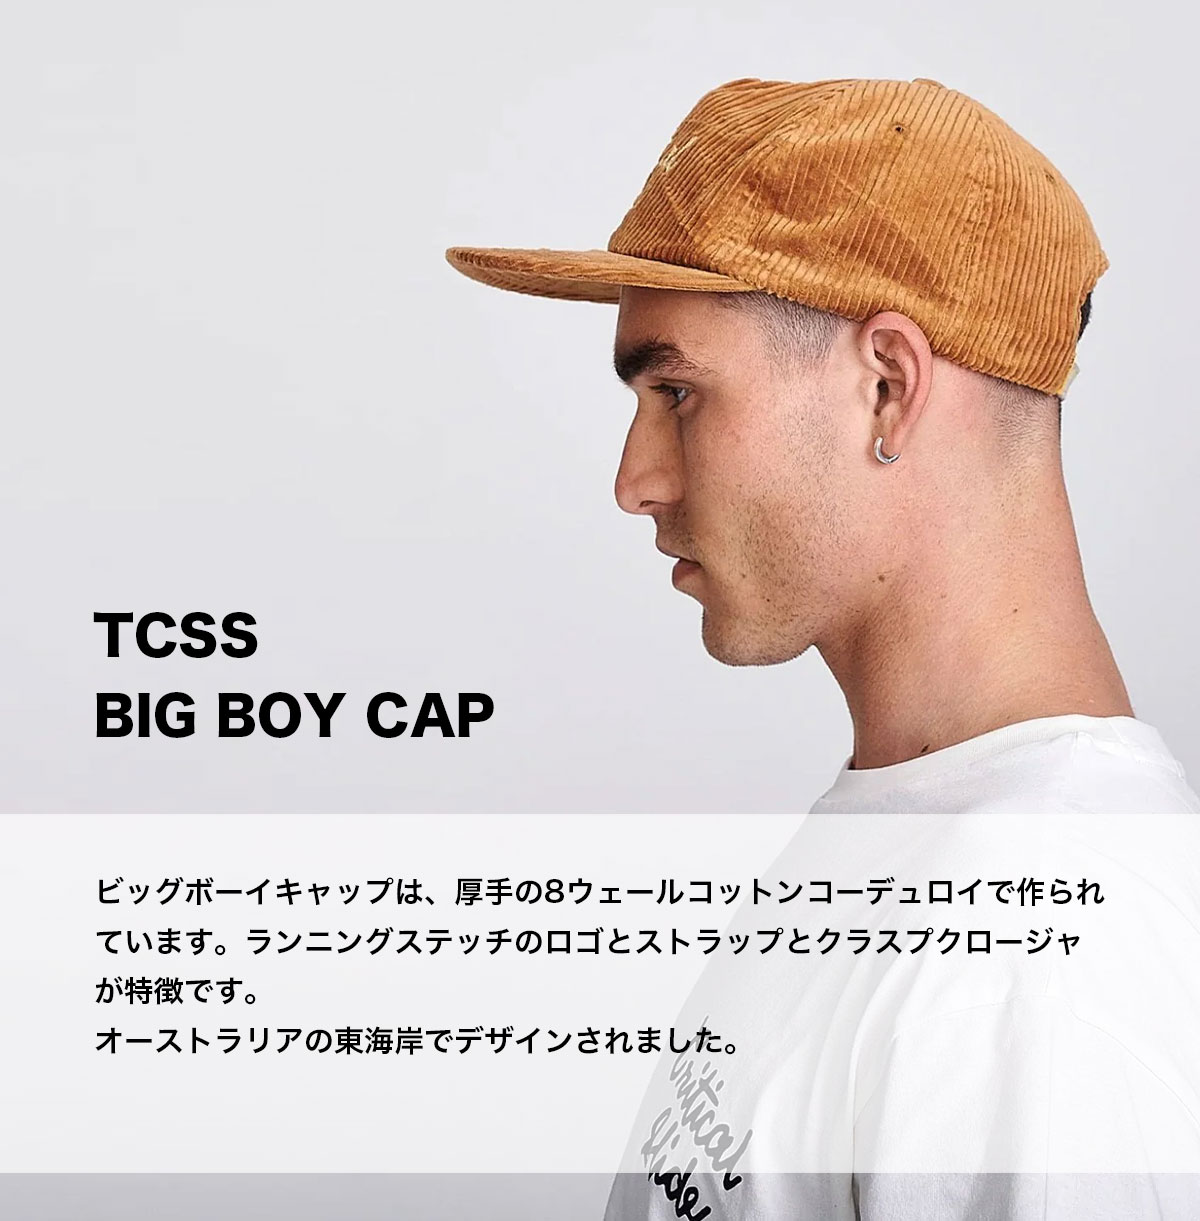 TCSS キャップ 帽子 メンズ コーデュロイ ブラウン BIG BOY CAP 人気ブランド CRITICAL SLIDE クリティカルスライド  (ティーシーエスエス) 通販【HW2311】-ジャックオーシャンスポーツ